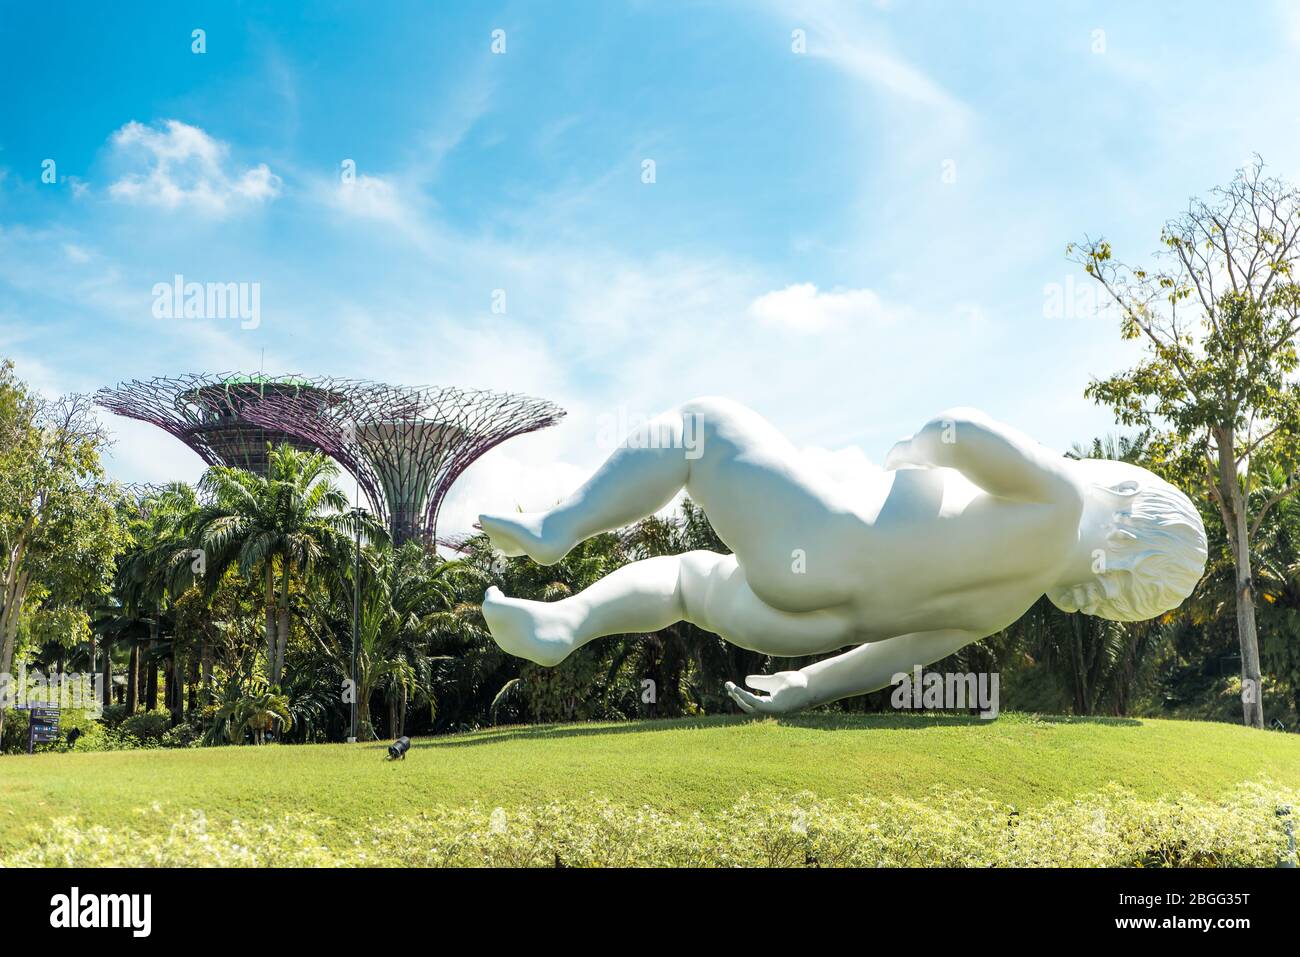 Singapore, ottobre 2019: La gigantesca scultura del bambino di Marc Quinn, chiamata 'Planet', che galleggia nell'aria al Gardens by the Bay Park Foto Stock